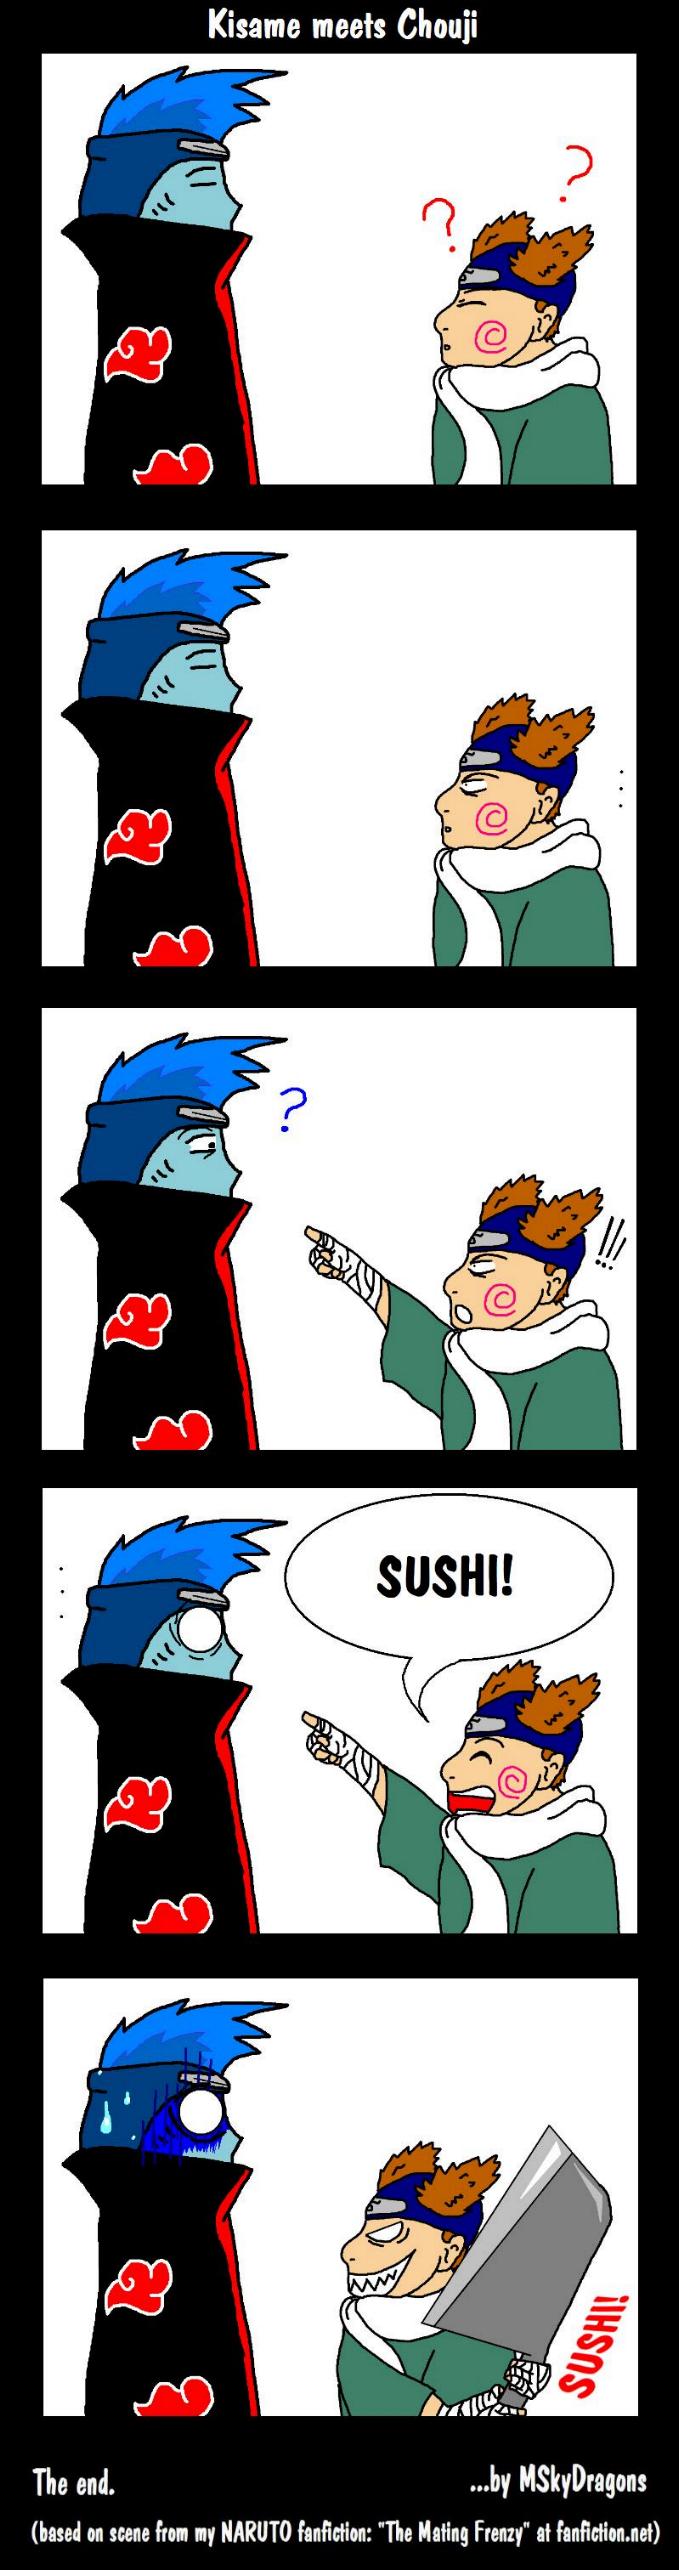 Parce que les fans arts c'est lol des fois. - Page 2 Naruto10